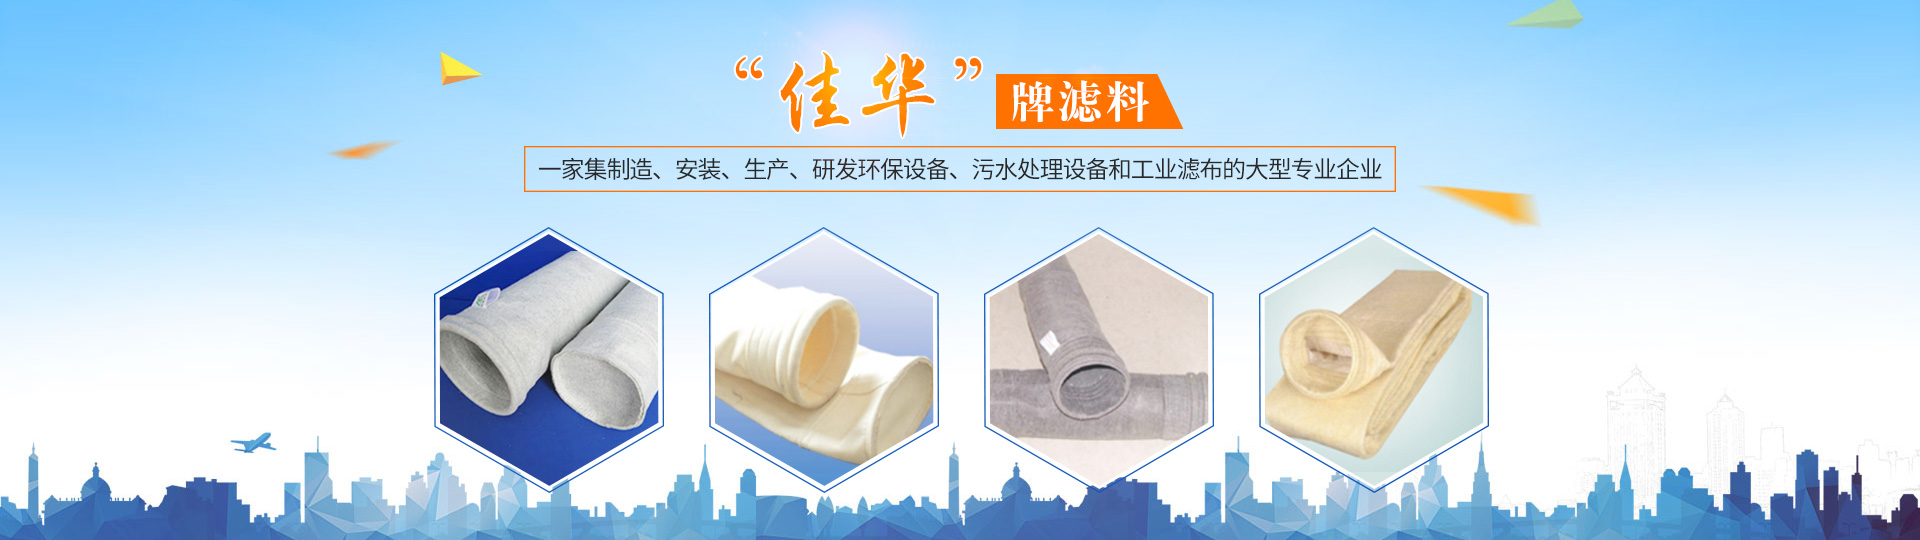 湖南佳華環保產業有限公司_工業濾布濾料|湖南除塵器價格|過濾袋生產廠家